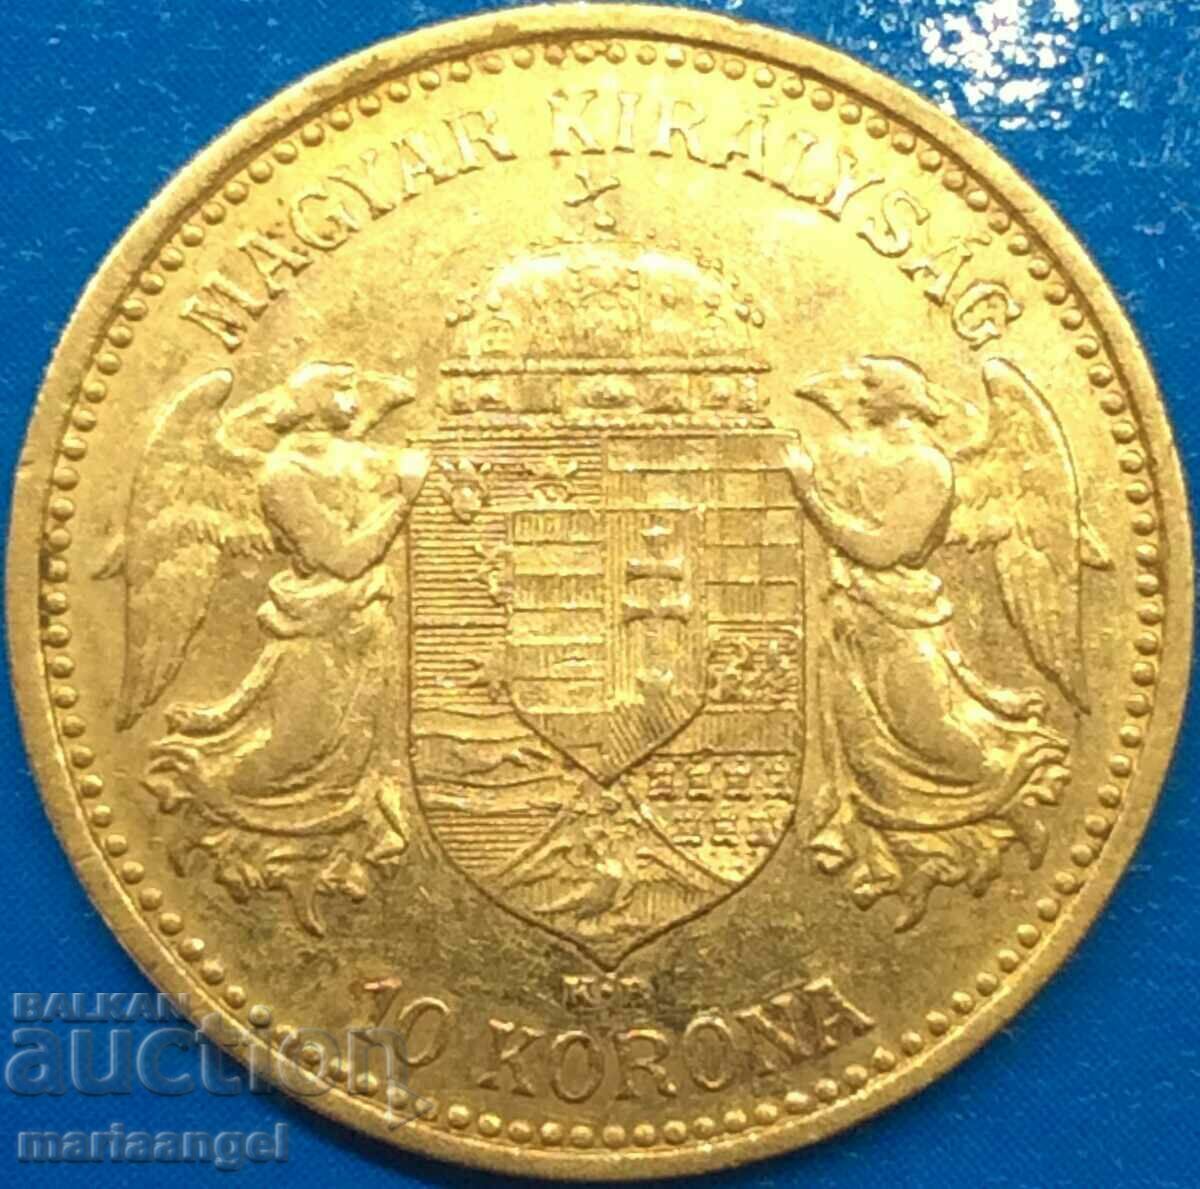 Ουγγαρία 10 κορώνες 1904 Φραντς Γιόζεφ χρυσό